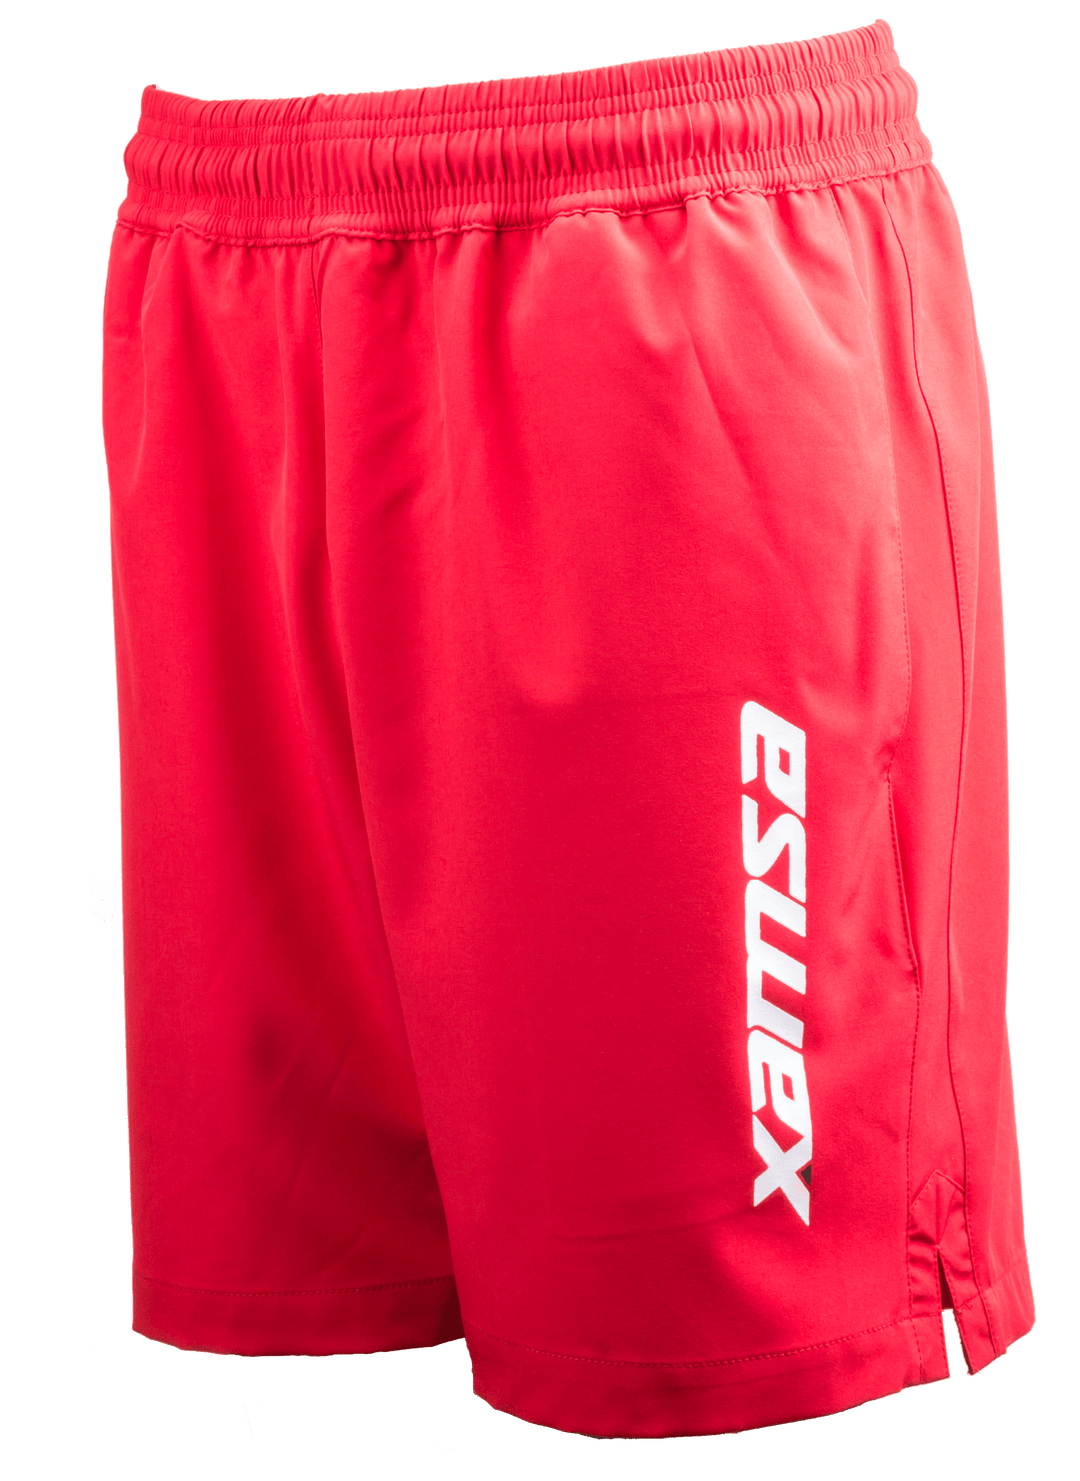 Xamsa Men's Shorts Red with logo - XamsaSquash